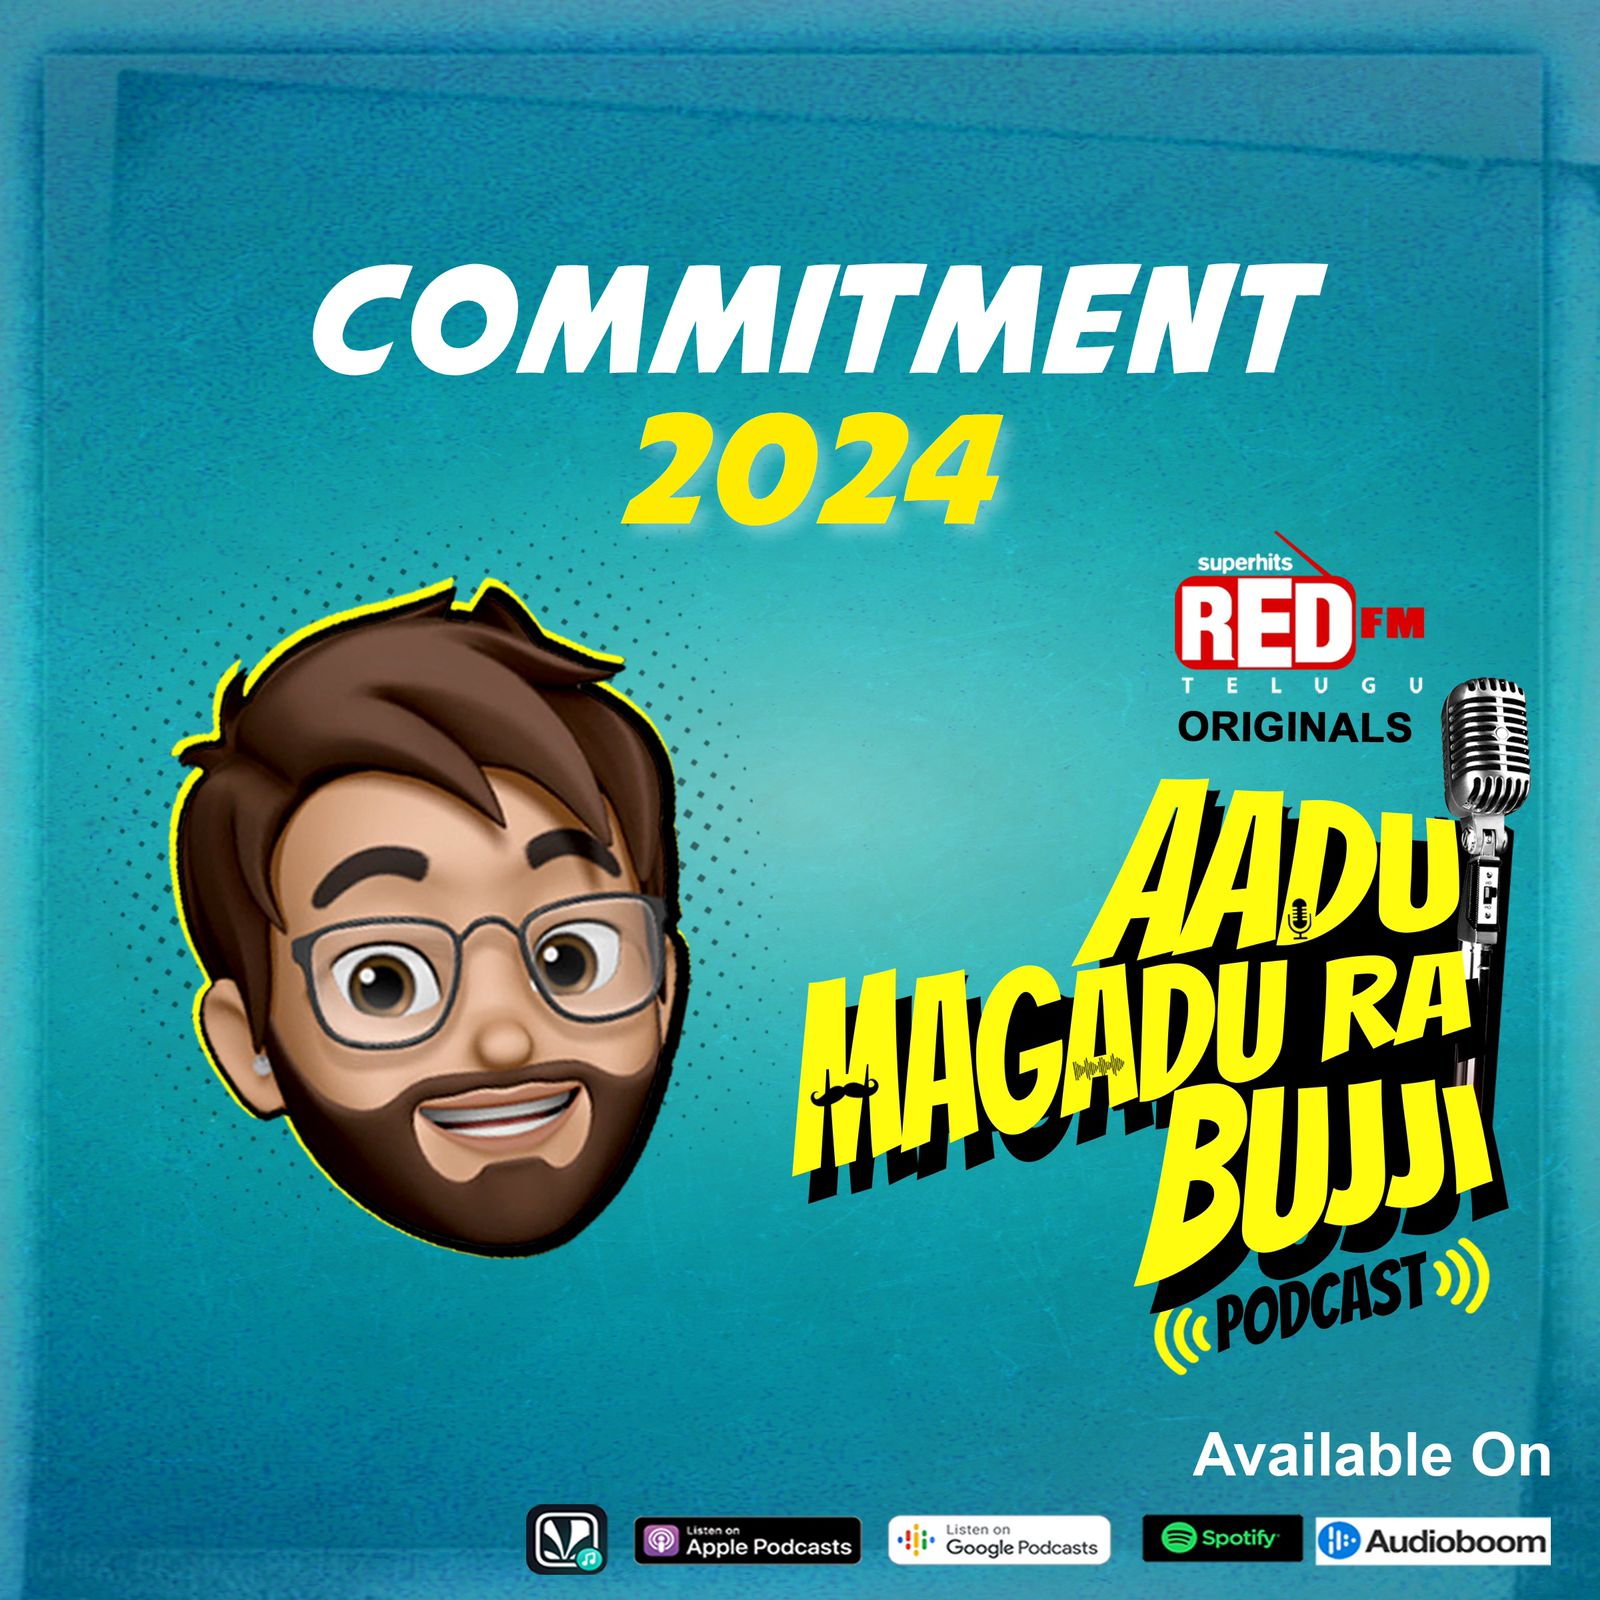 Commitment 2024 | E 121 | Aadu Magadra Bujji | Red FM Telugu